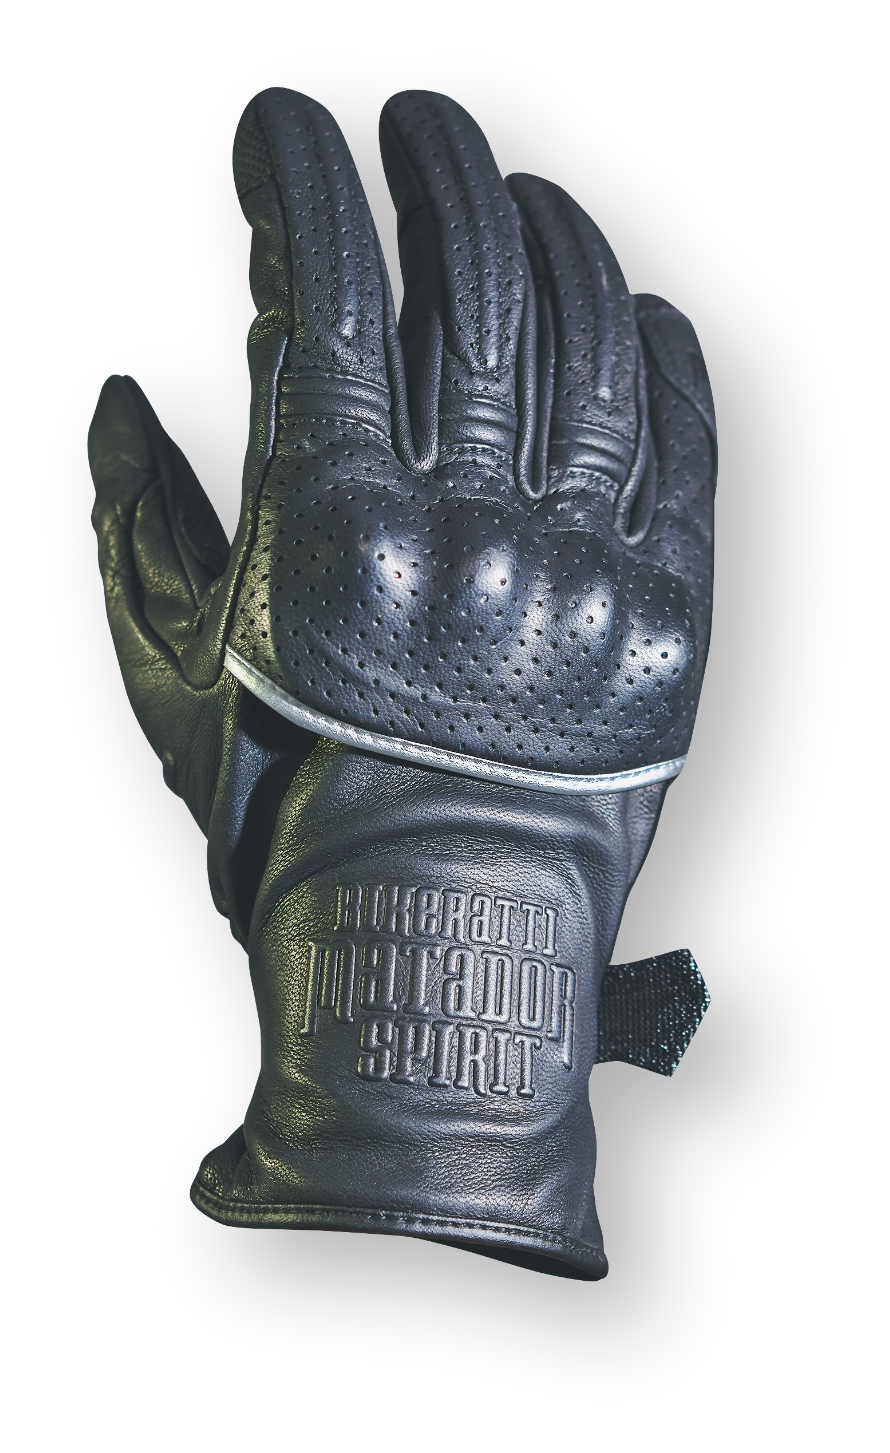 Matador Gloves